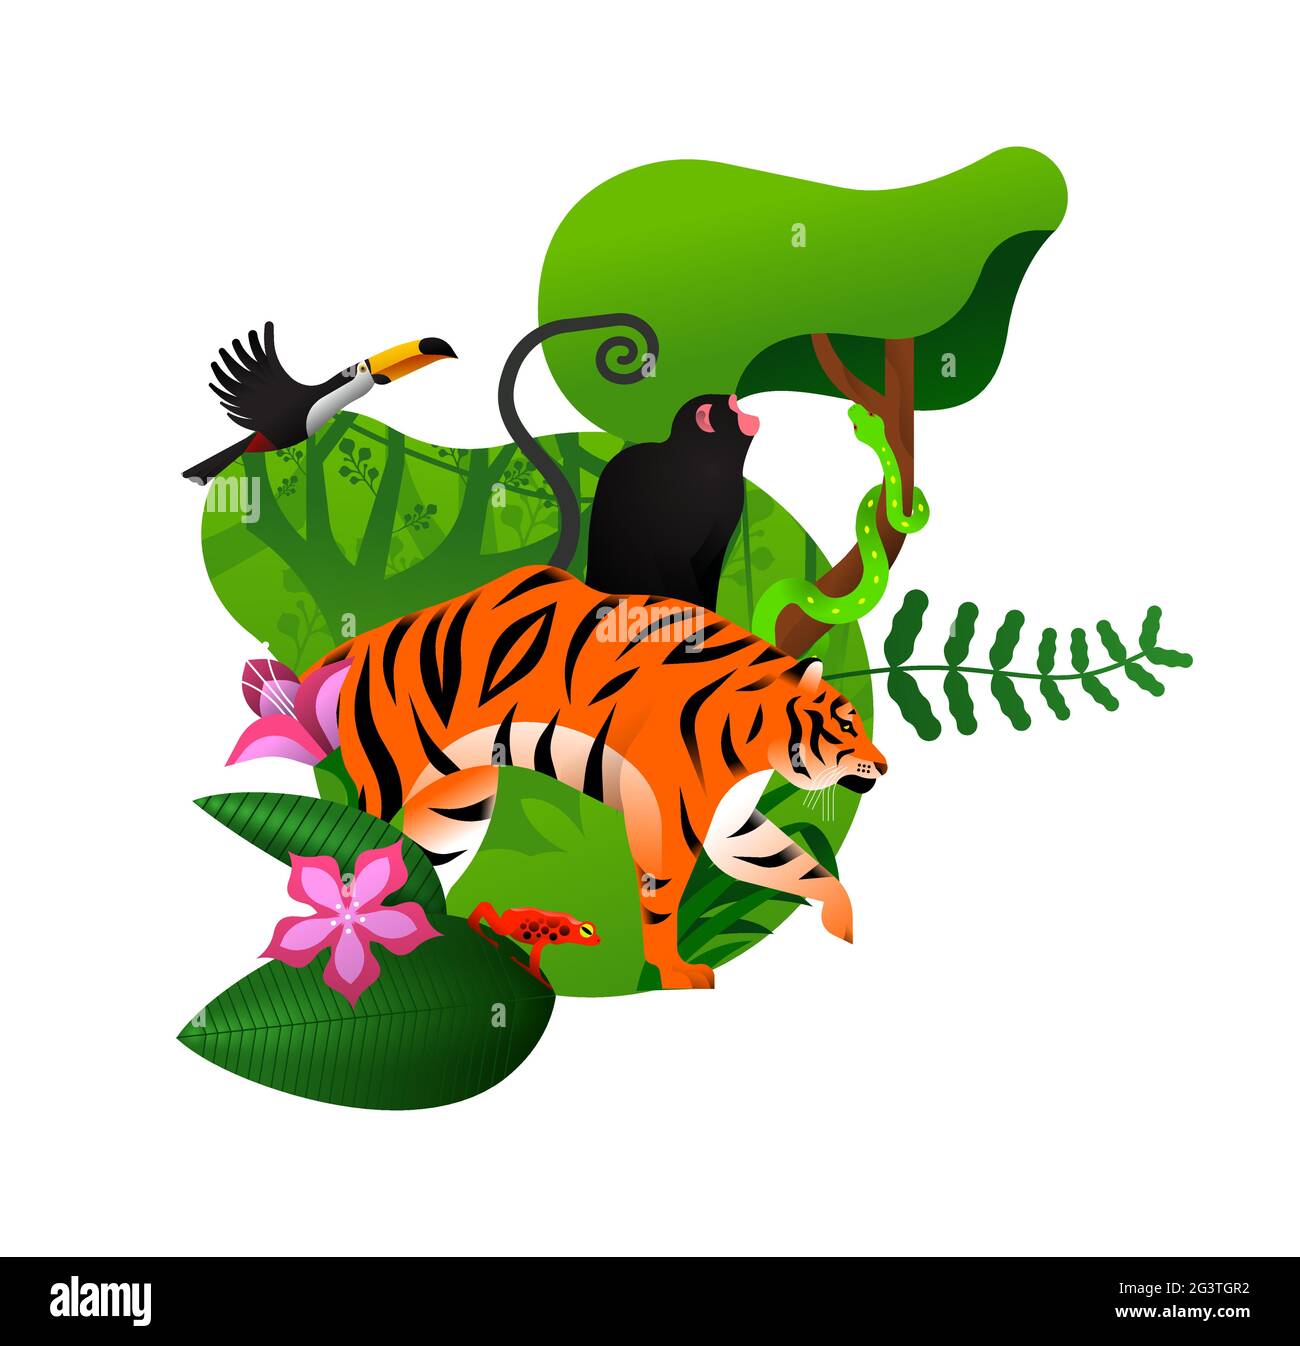 Vielfältige Dschungelumgebung mit Tieren und exotischen Pflanzen. Moderne flache Cartoon-Illustration des grünen Ökosystems auf isoliertem Hintergrund. Inklusive Tiger, Stock Vektor